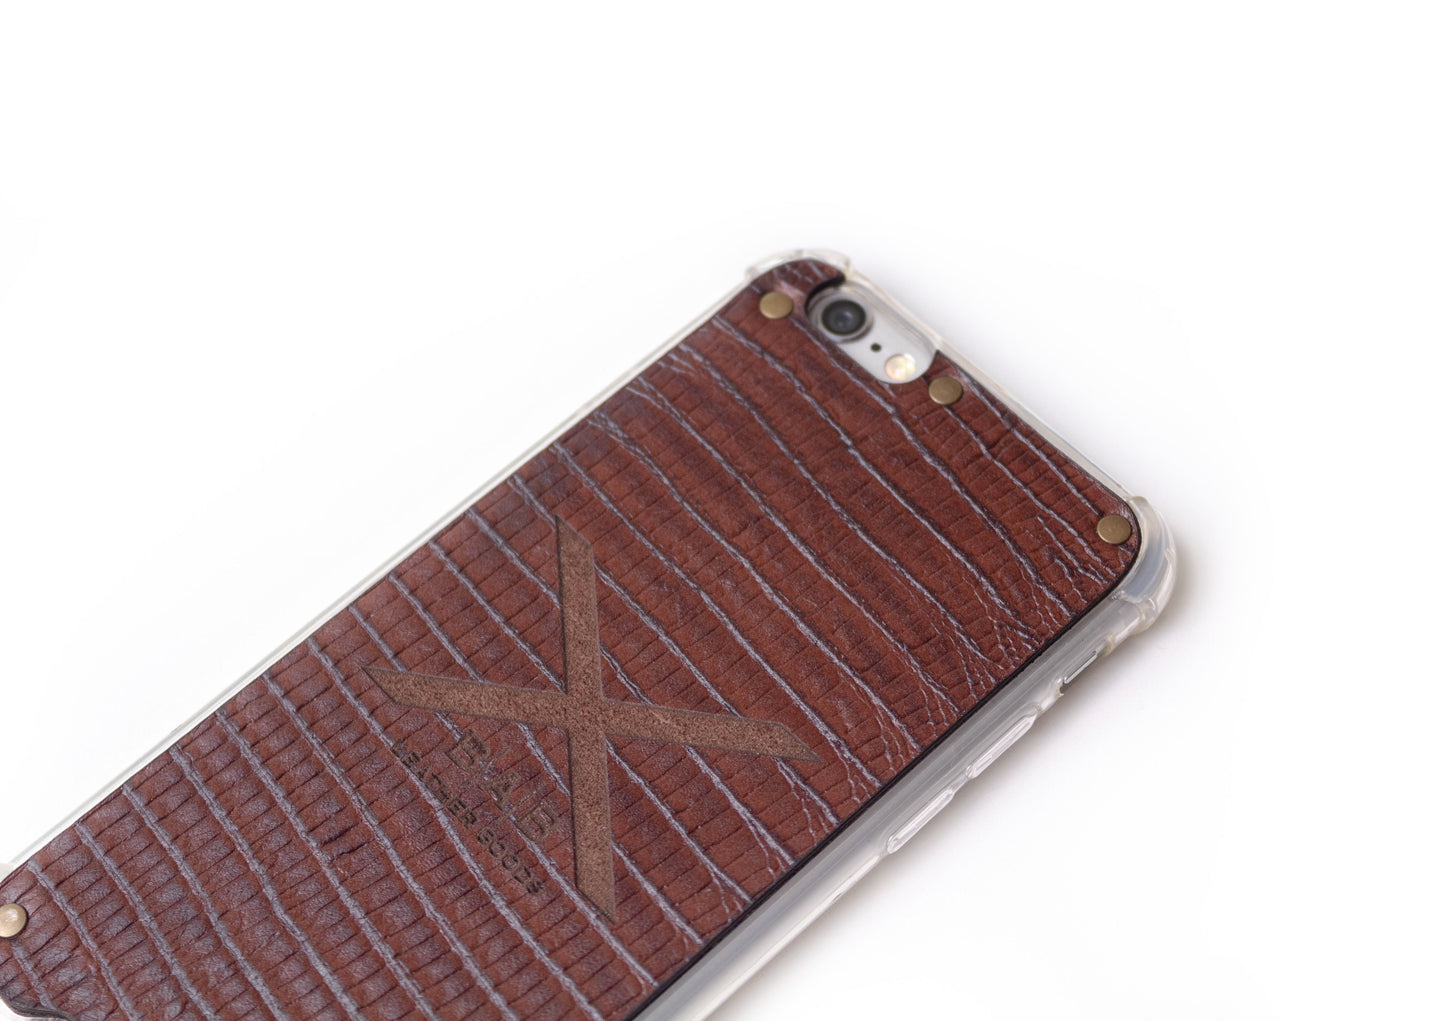 Capa para iPhone de Couro Genuíno Lagarto Marrom Texturizado cortado e gravado a laser, 5 Rebites de Bronze.- F36